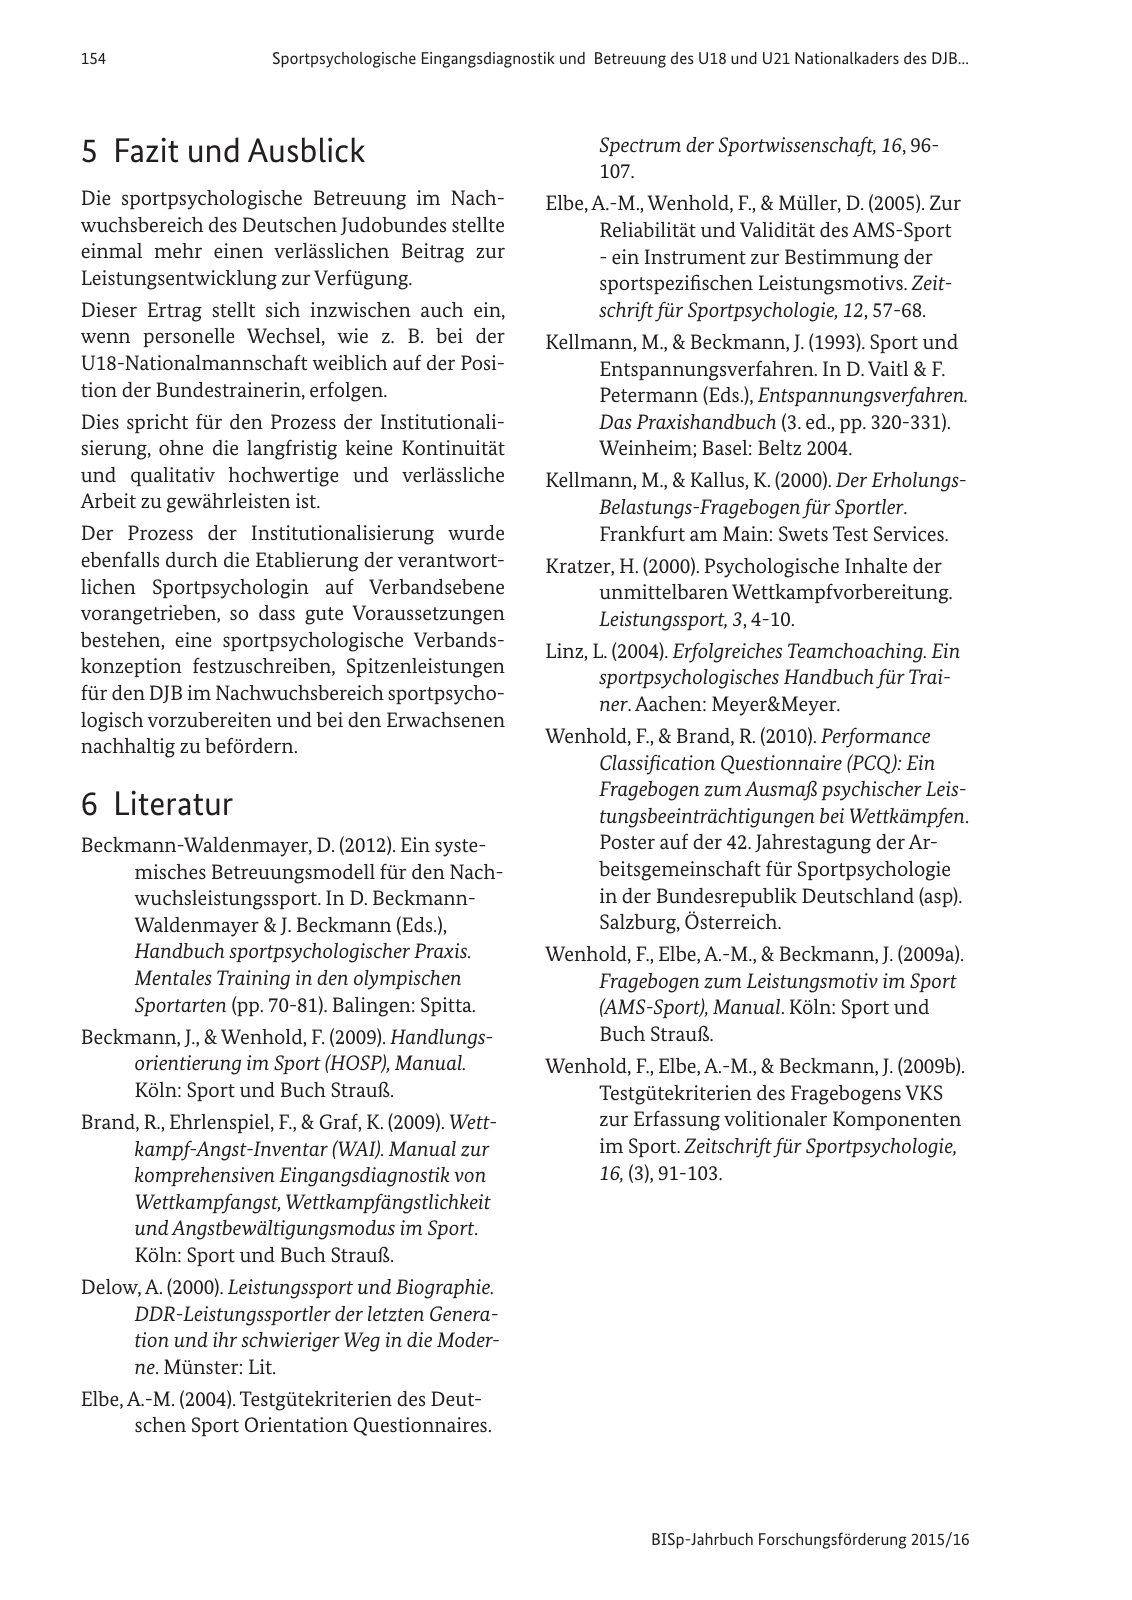 Vorschau BISp-Jahrbuch Forschungsförderung 2015/16 Seite 156